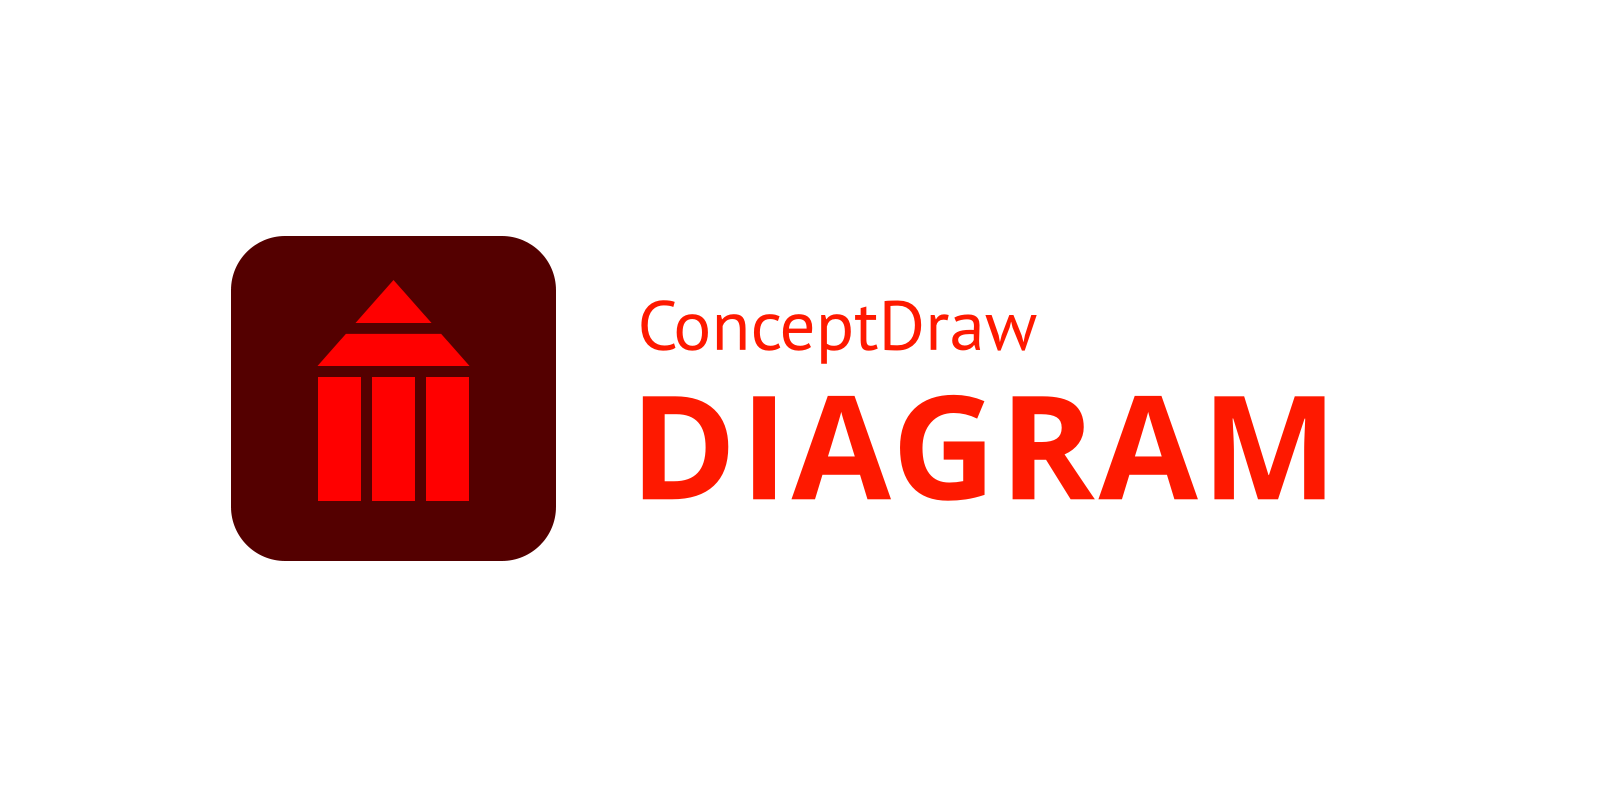 ConceptDraw DIAGRAM logo